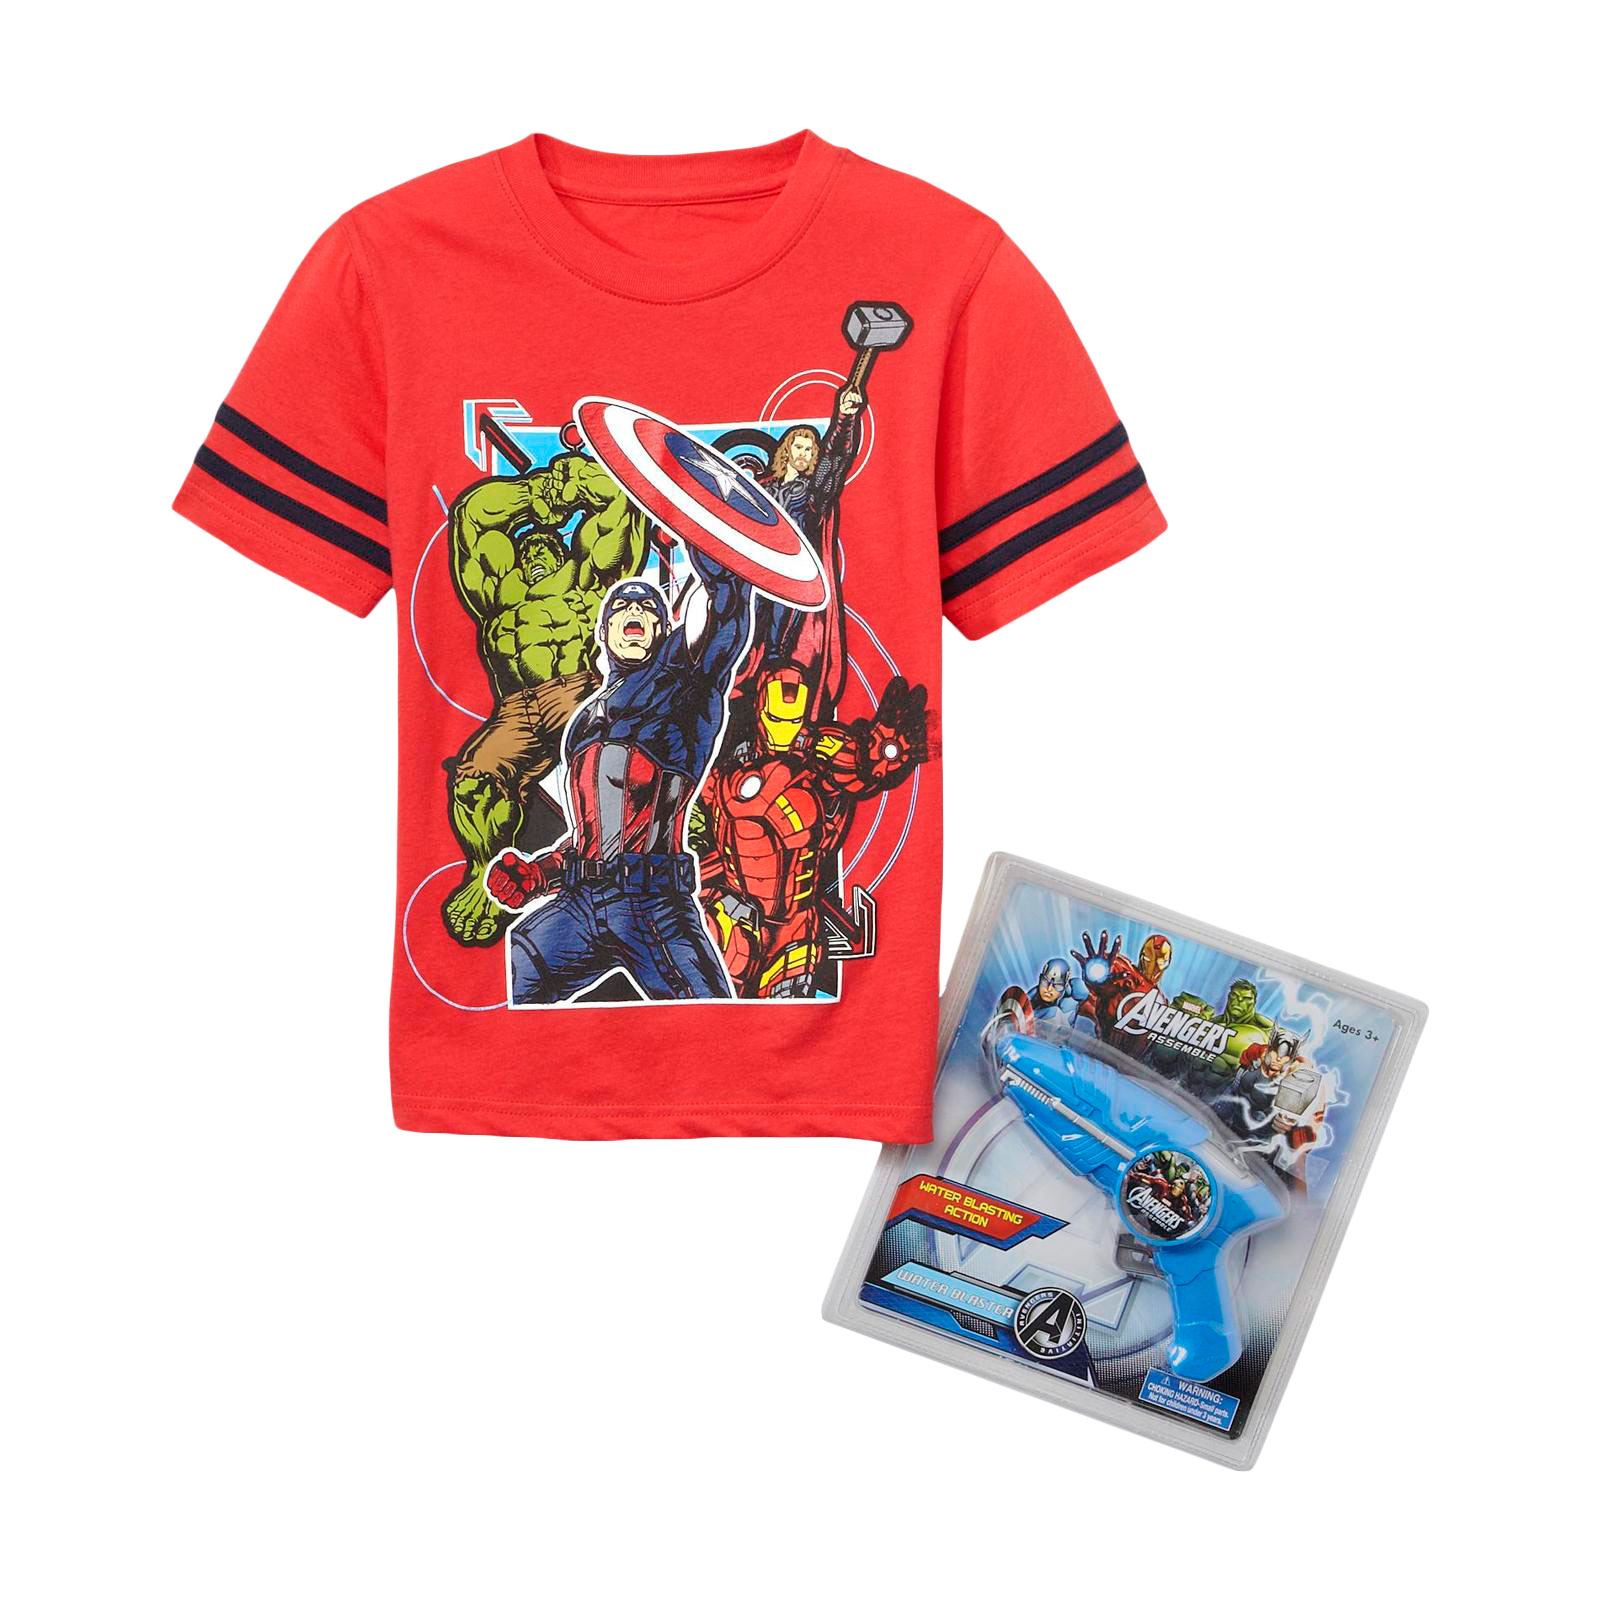 Marvel Avengers Boy's T-Shirt & Squirt Gun